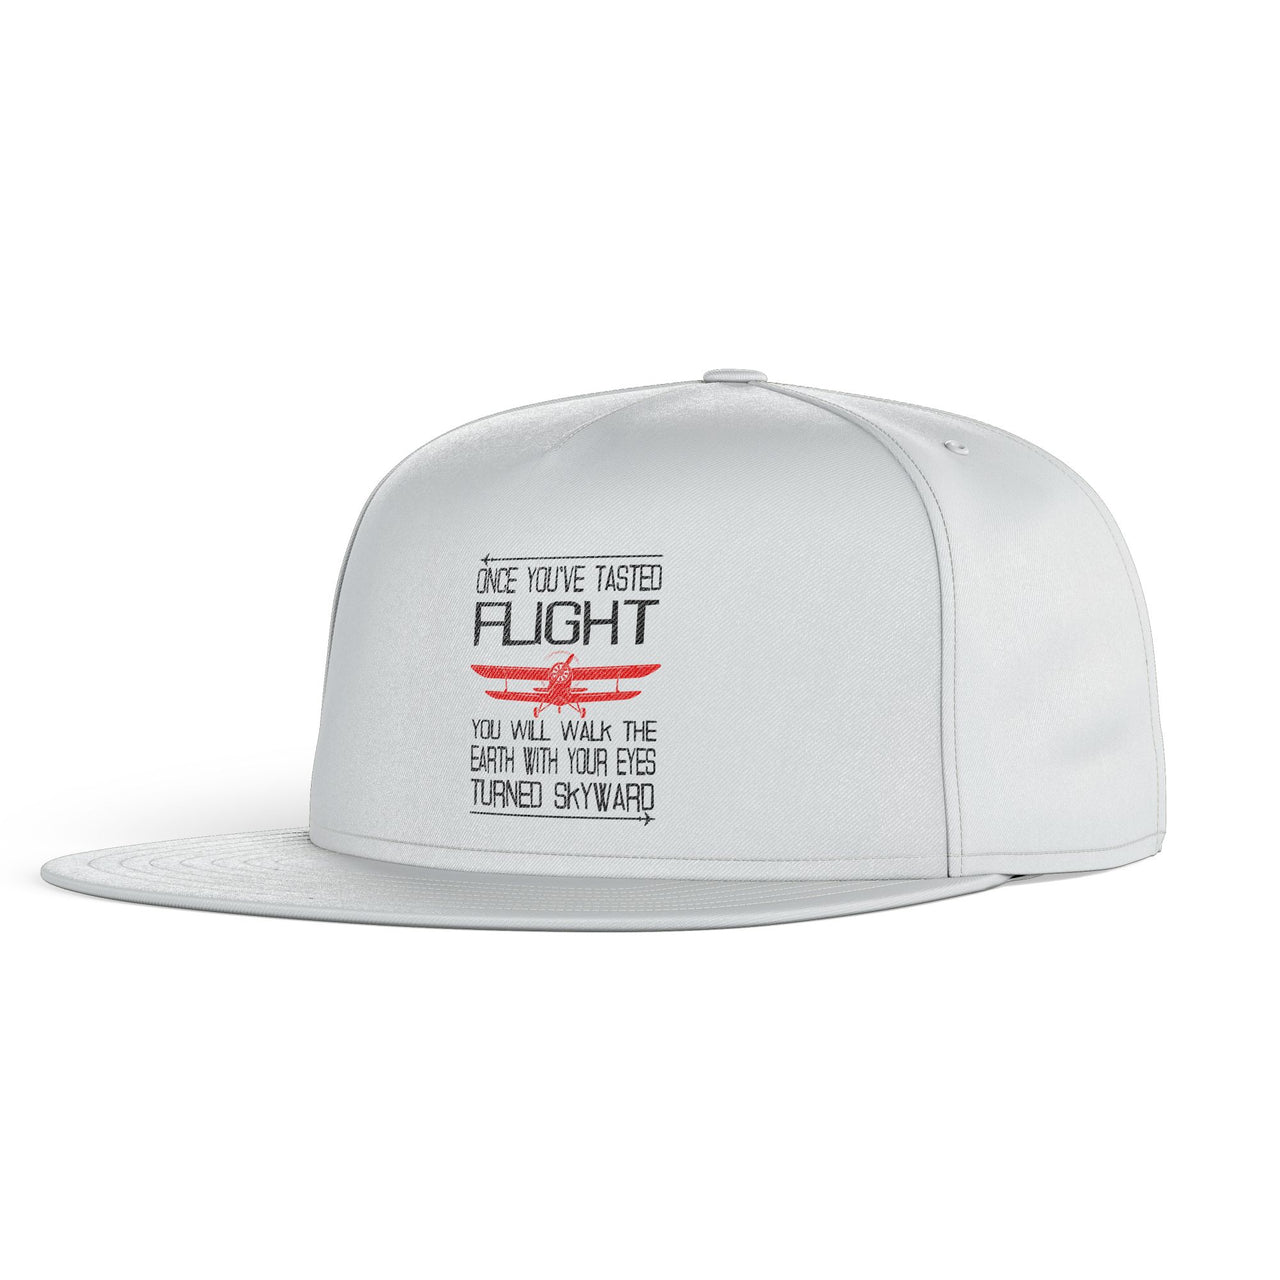 Once You've Tasted Flight Designed Snapback Caps & Hats